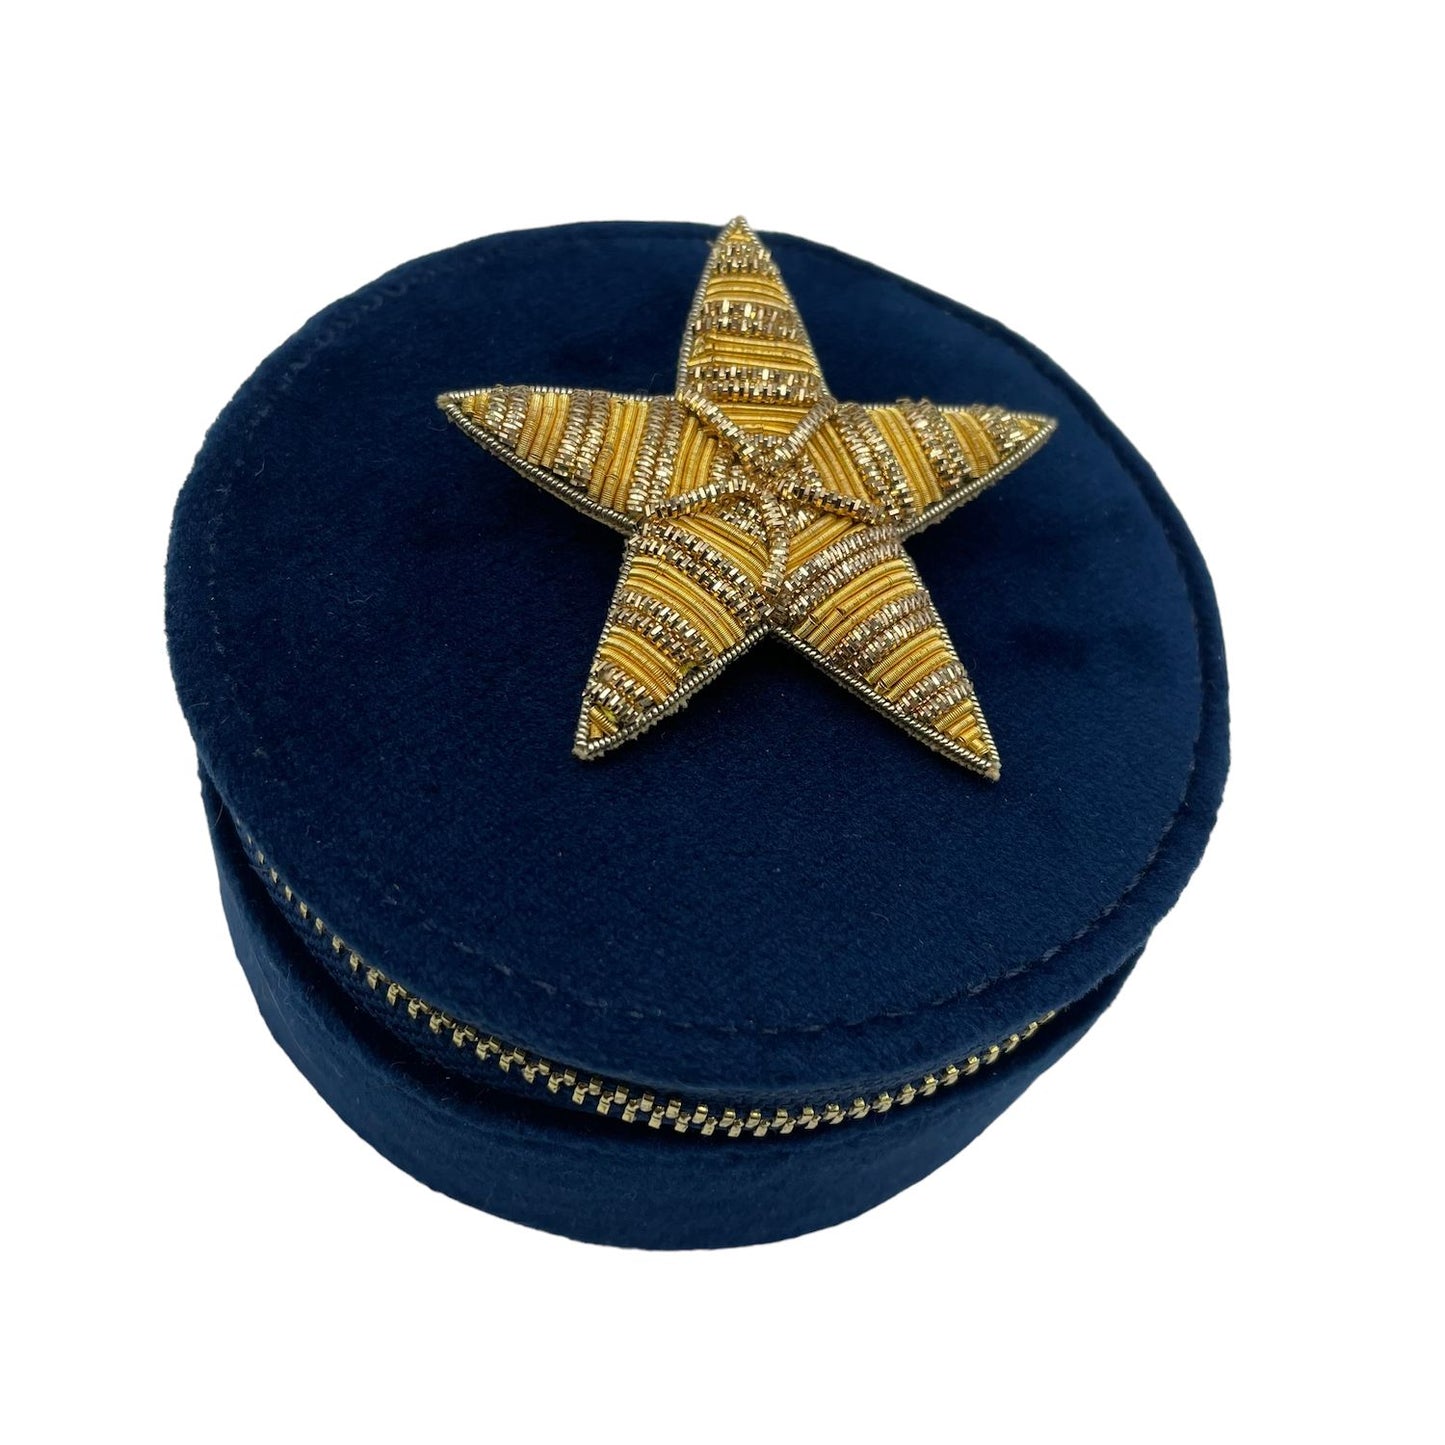 Jewellery travel pot blue - recycled velvet - gold star